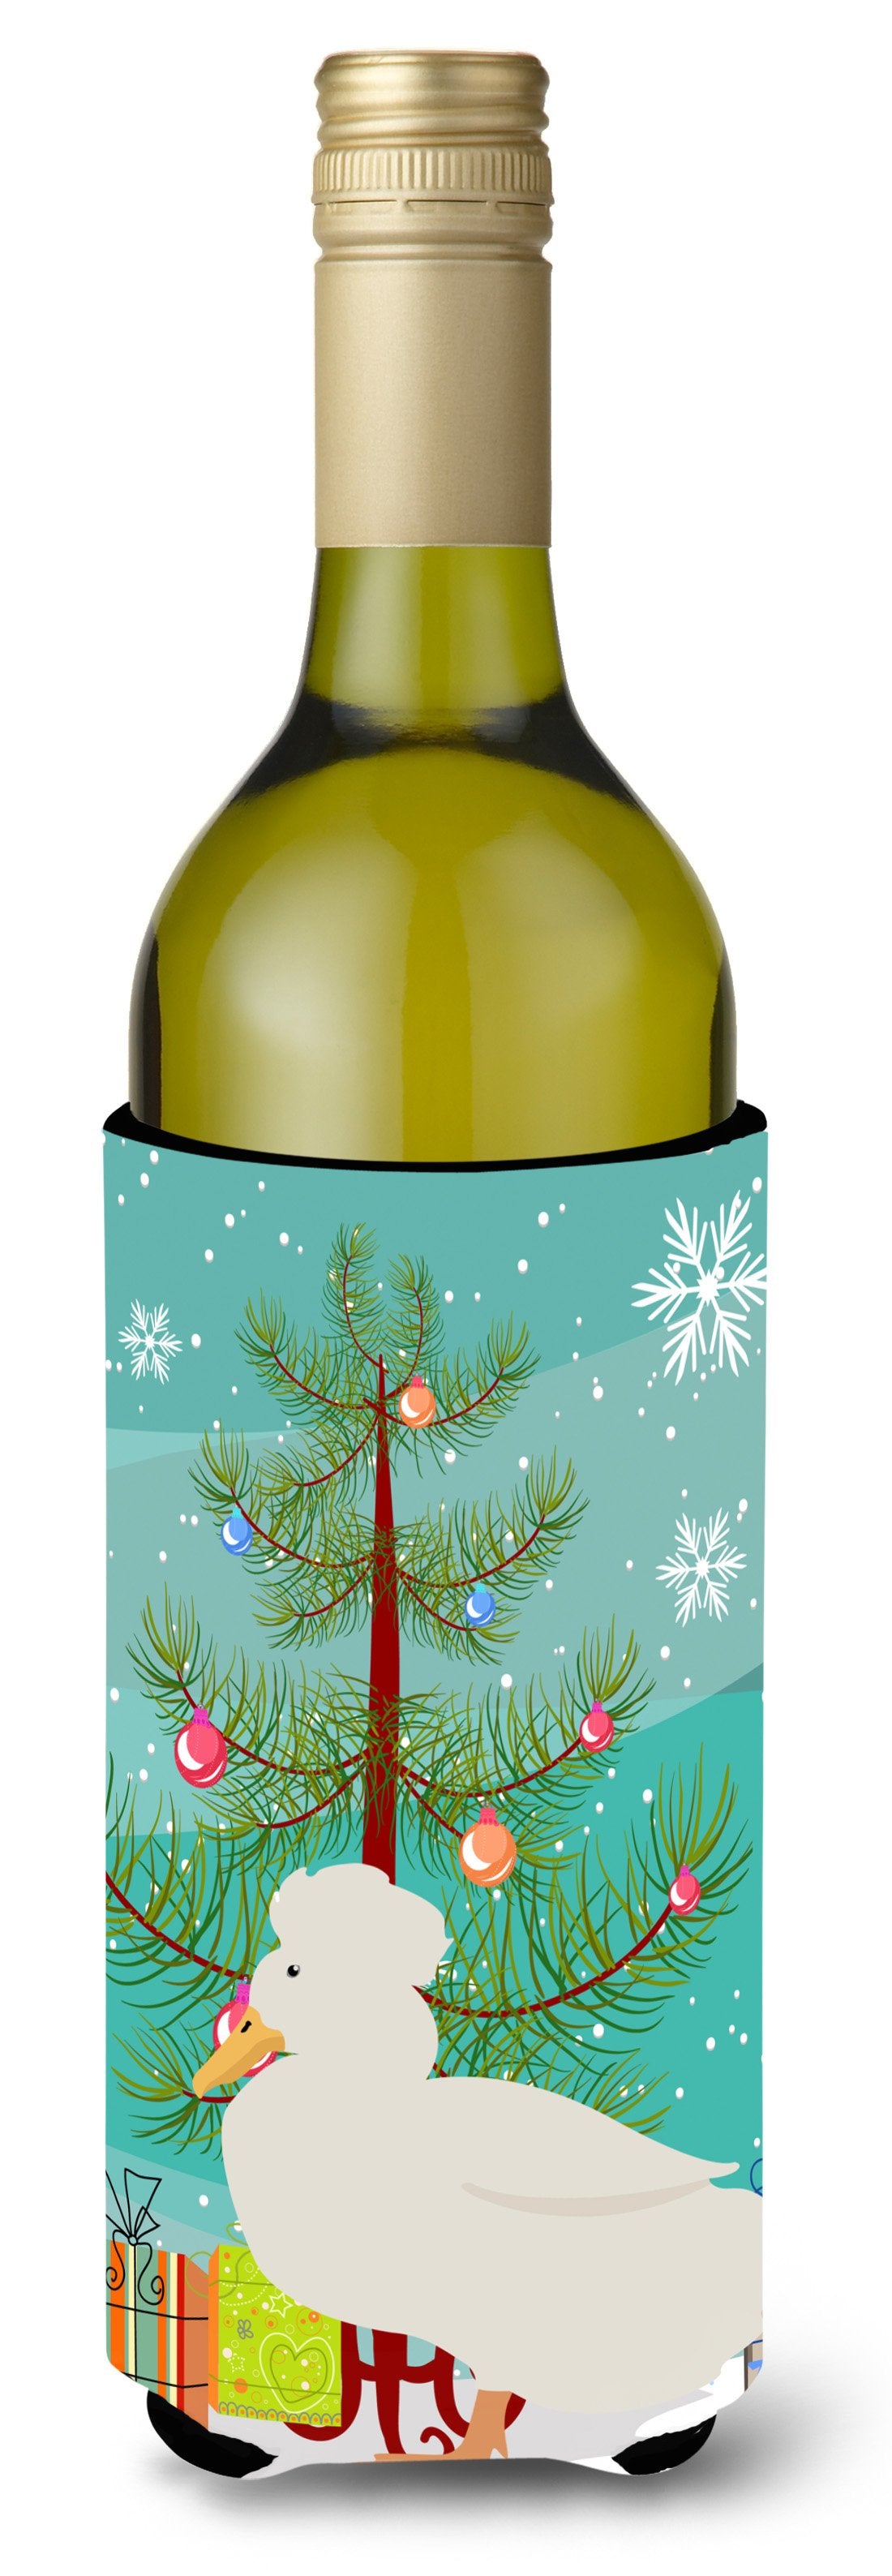 Crested Duck Christmas Wine Bottle Beverge Insulator Hugger BB9224LITERK by Caroline's Treasures